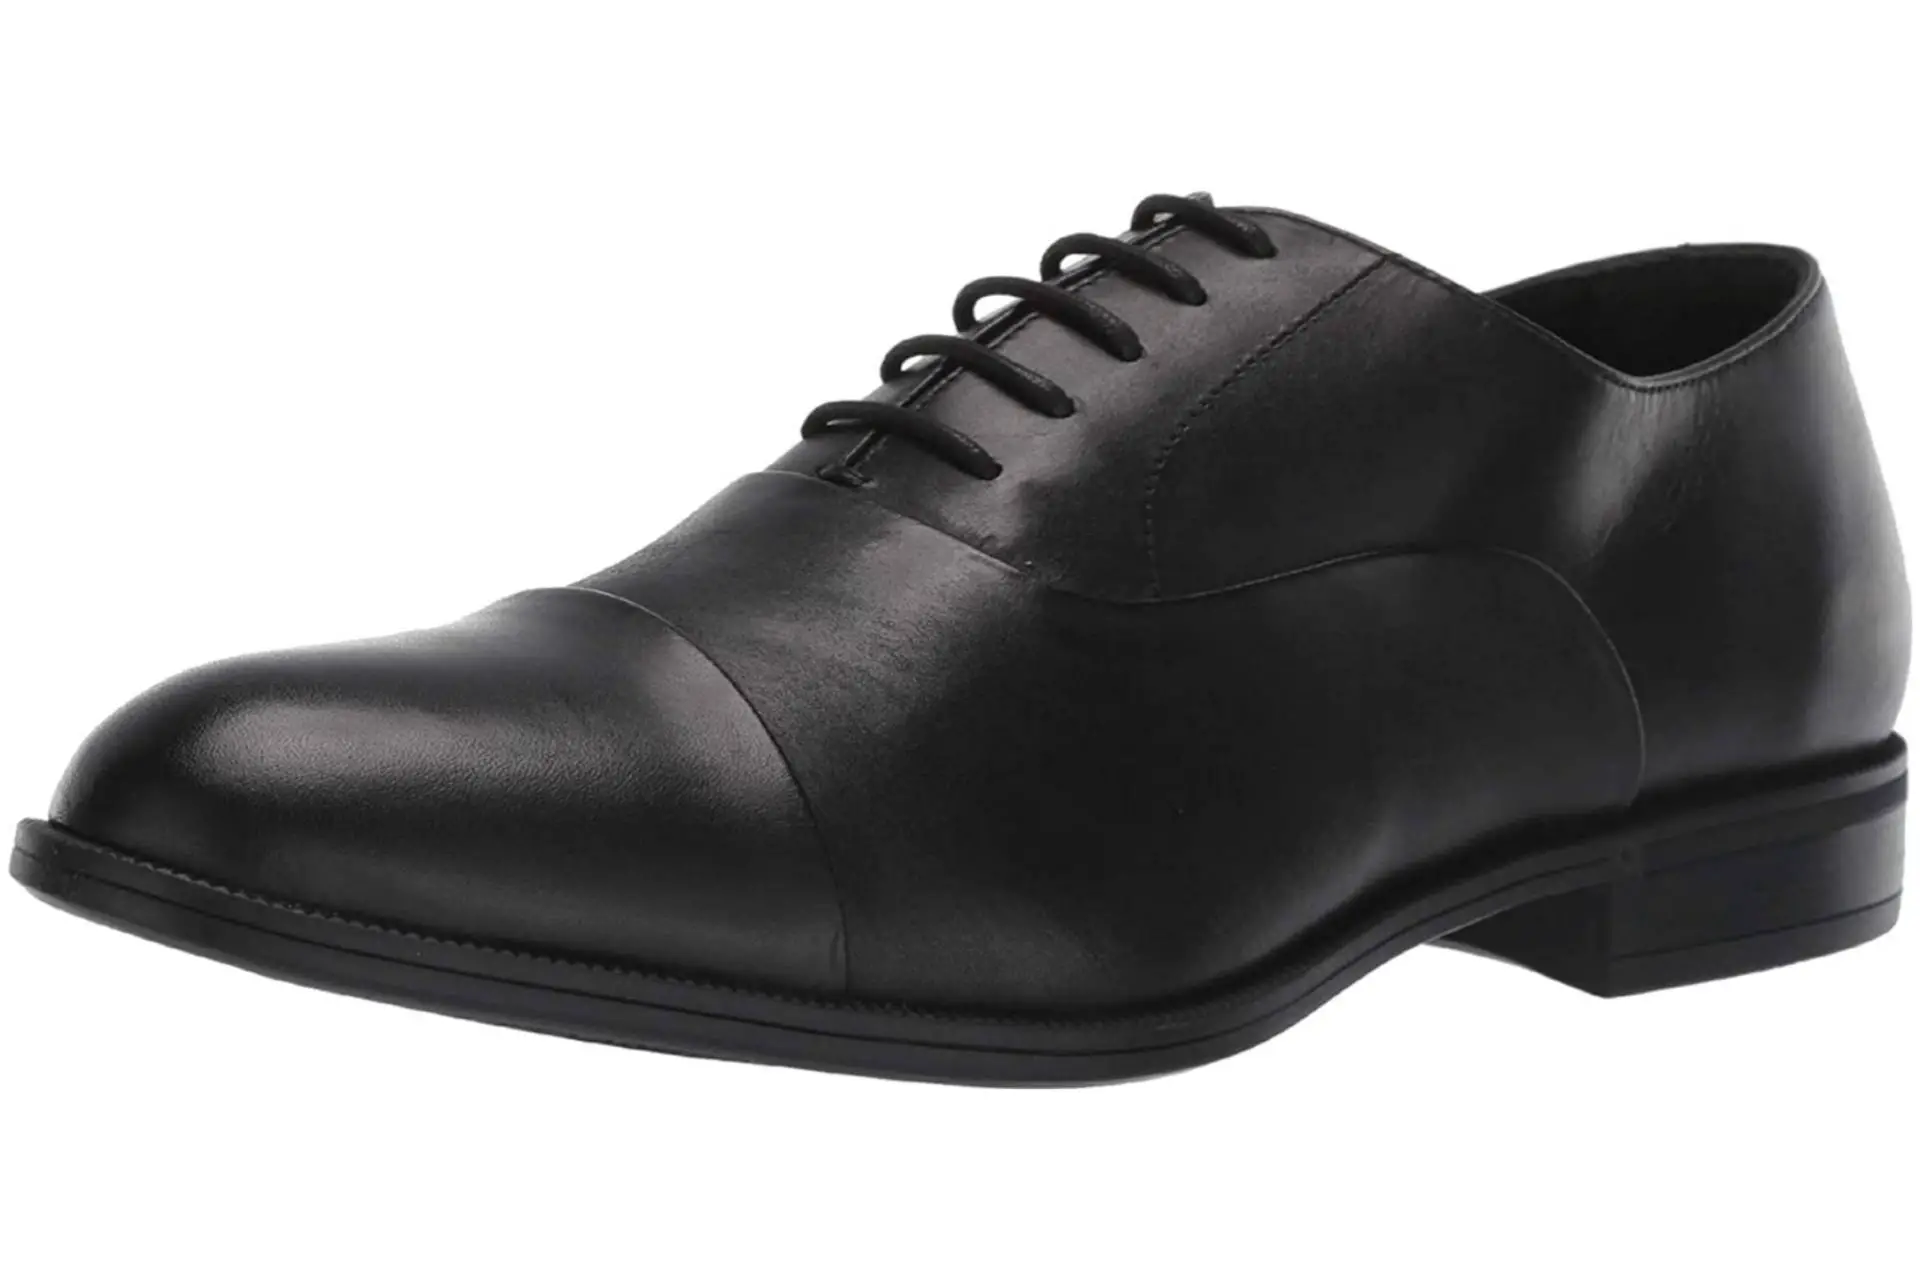 Best men's Oxford dress shoes